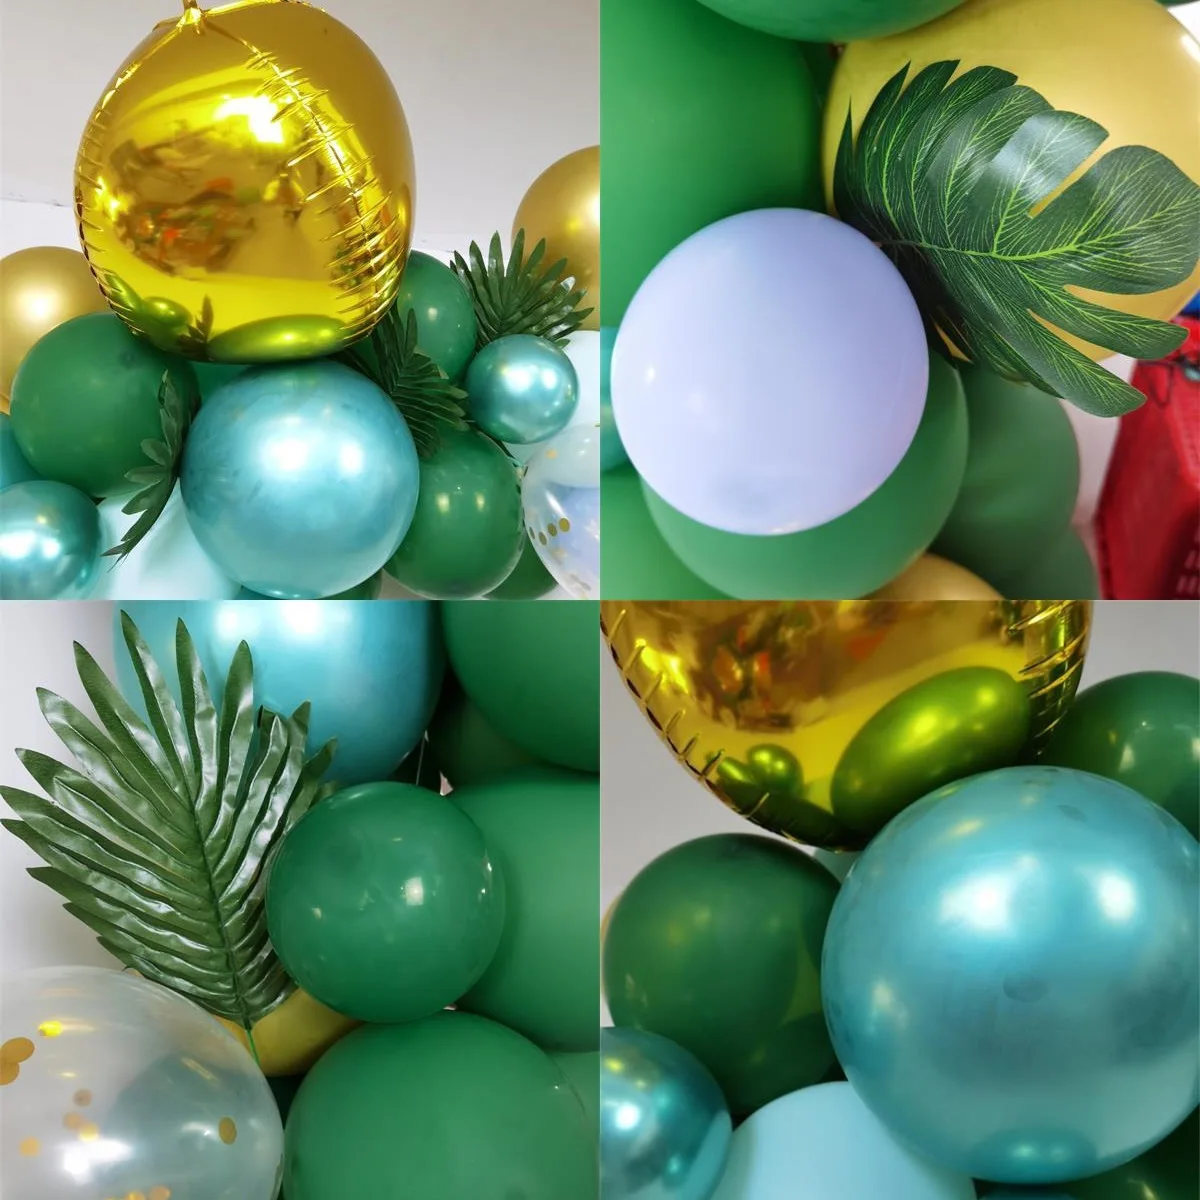 

106 шт. лес сафари тропическом стиле воздушные шары гирлянда арочный комплект зеленых воздушных шаров из латекса с принтом динозавра для хороший подарок на день рождения, вечерние Декор